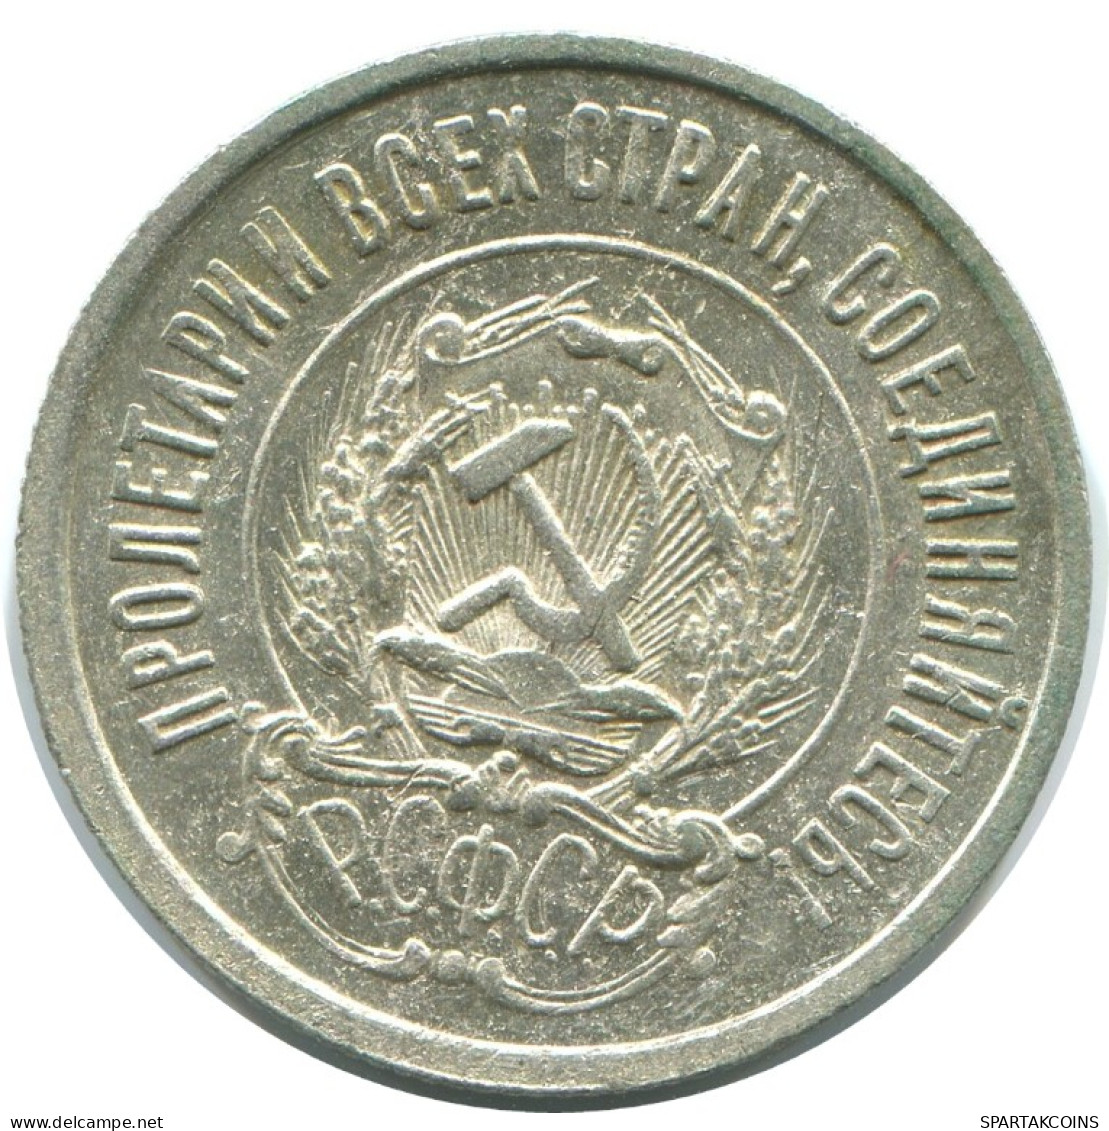 20 KOPEKS 1923 RUSSIA RSFSR SILVER Coin HIGH GRADE #AF385.4.U.A - Russland